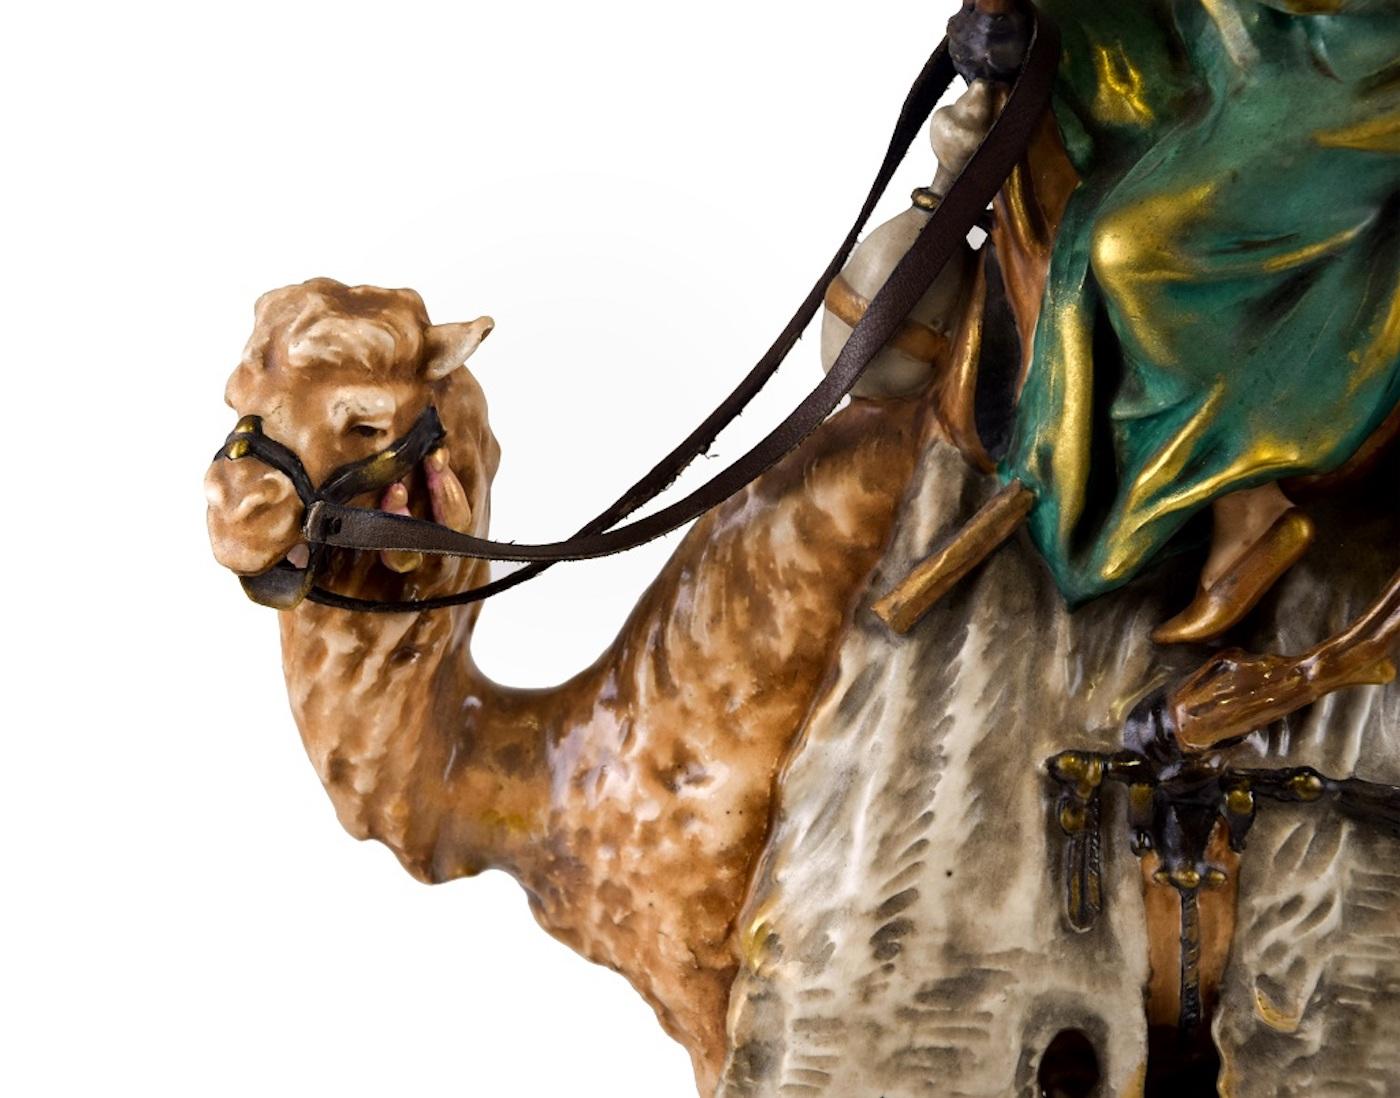 Camel with Bedouin est un objet décoratif original produit dans les années 1920 par Goldscheider.

Céramiques originales.

Très bonnes conditions.

Belle sculpture réalisée par la célèbre et importante manufacture autrichienne Goldscheider.